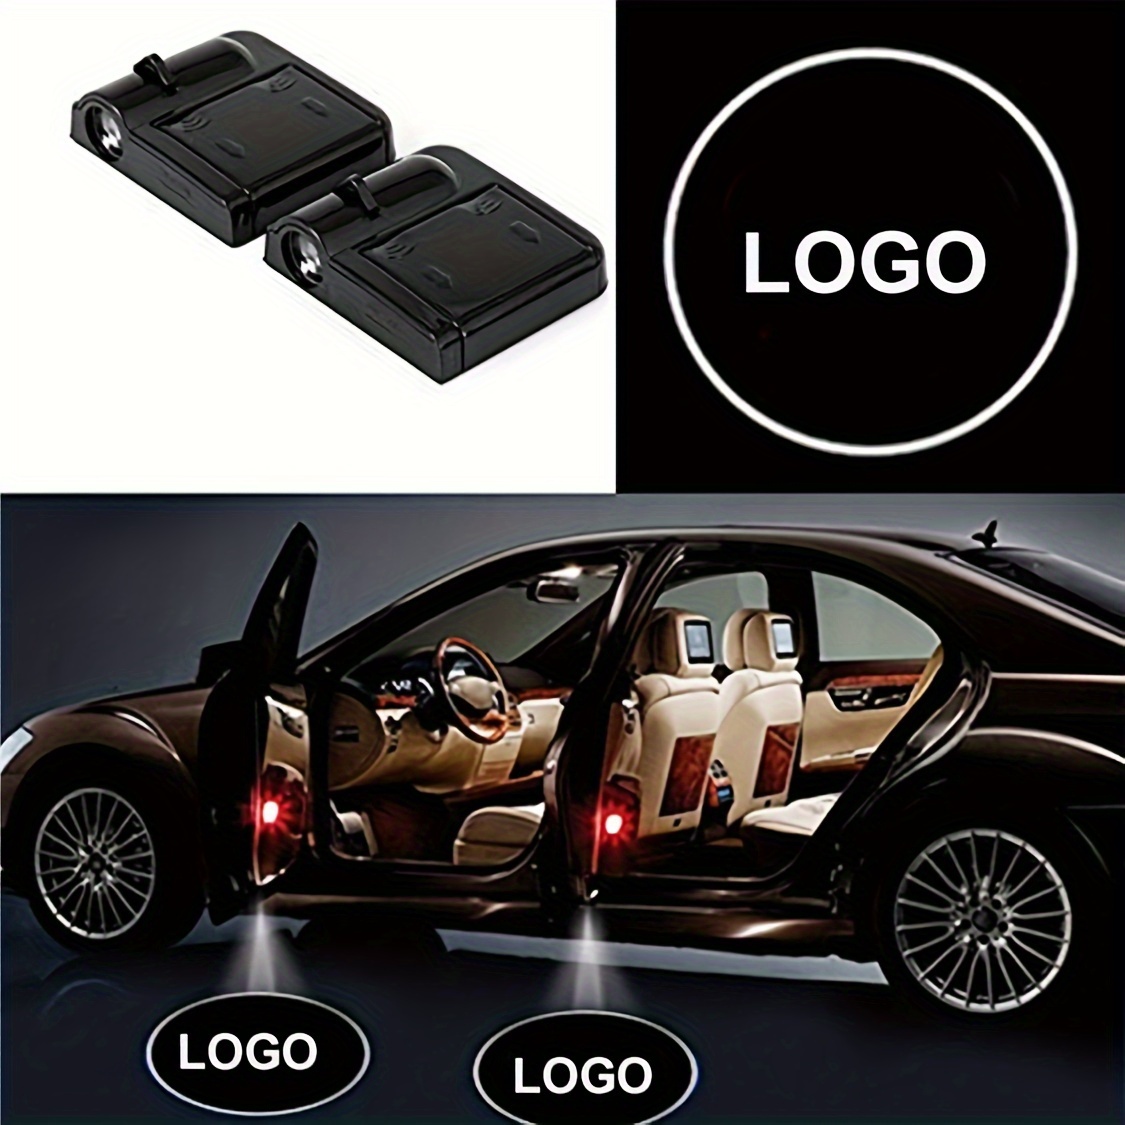 Milisten 3 Sets auto parts accesorios para auto car trim car hook car auto  accessories charger for car accessories for car stuff for cars PVC bling